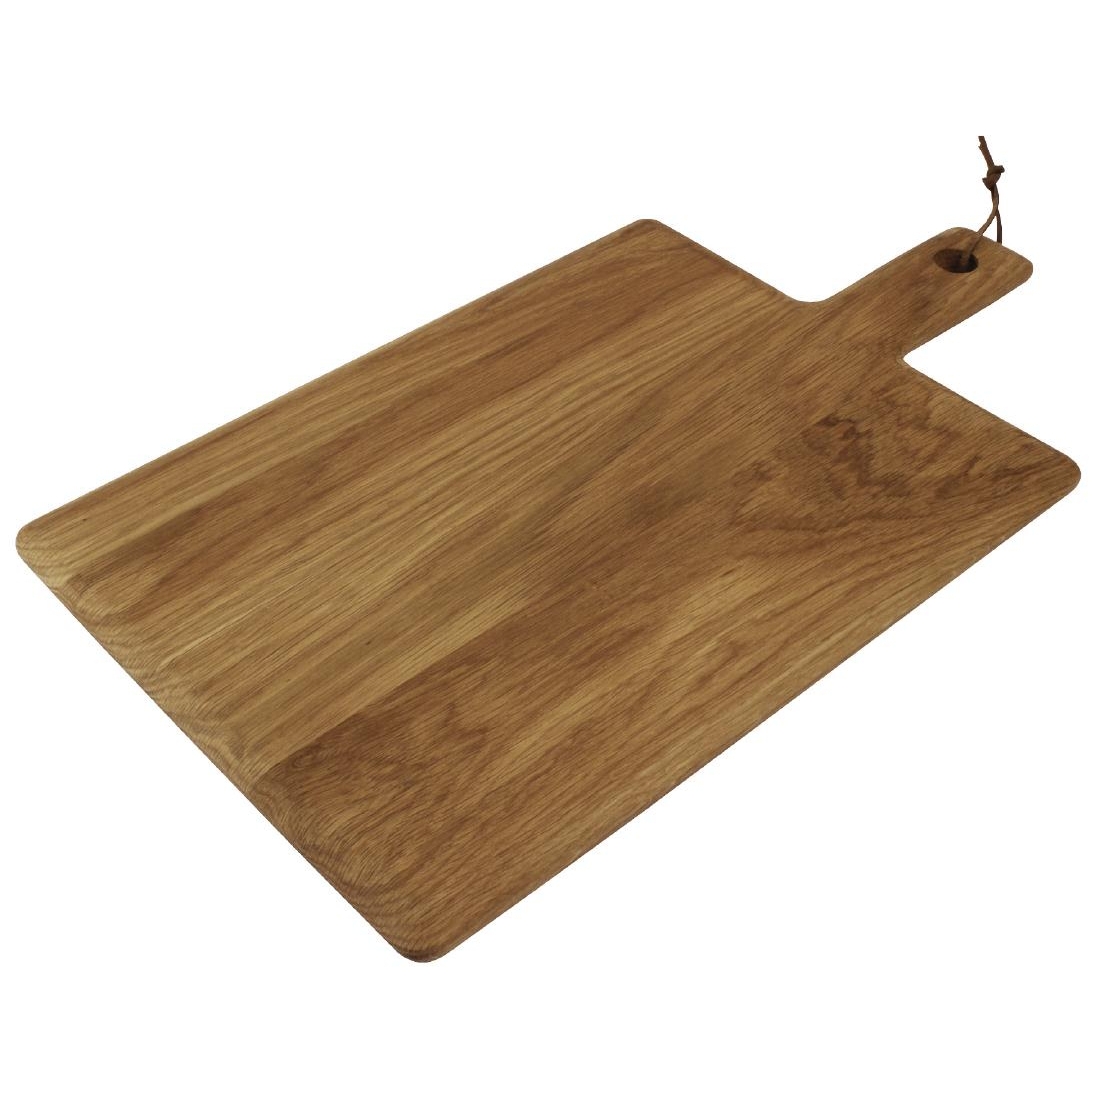 Olympia Oak Handled Wooden Board Large